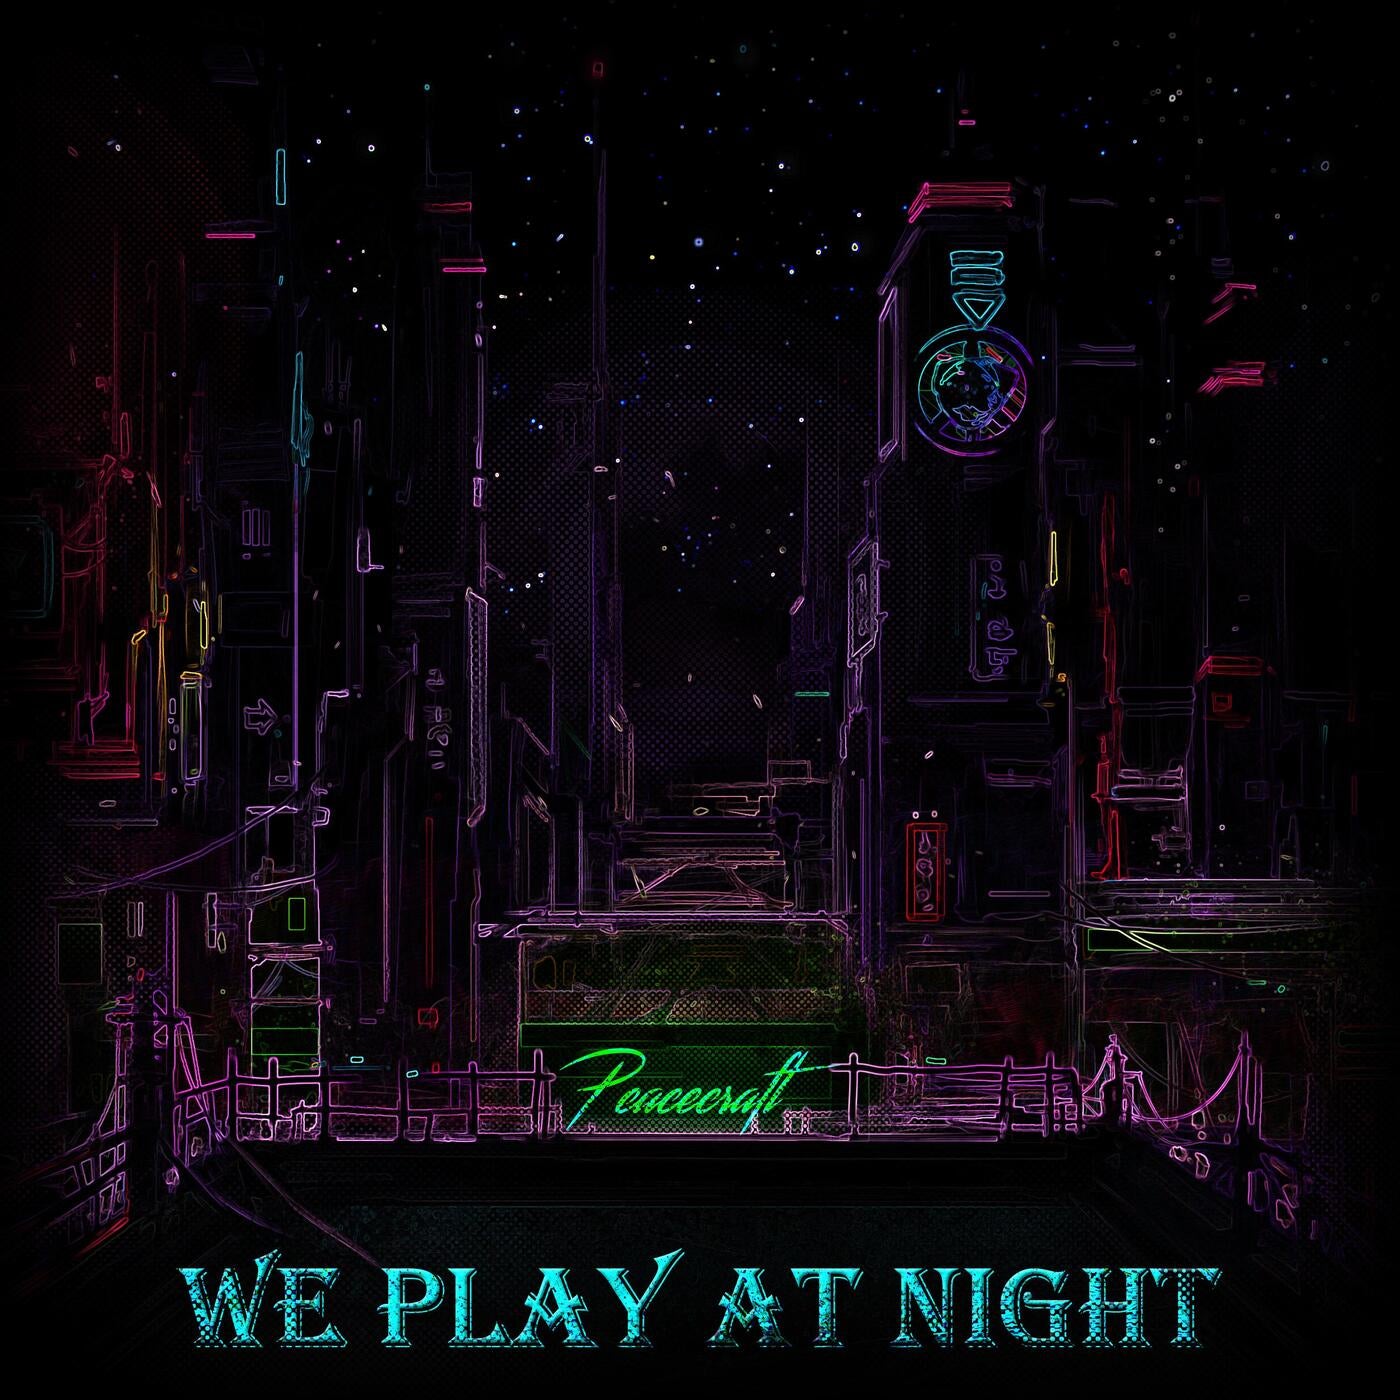 We Play at Night